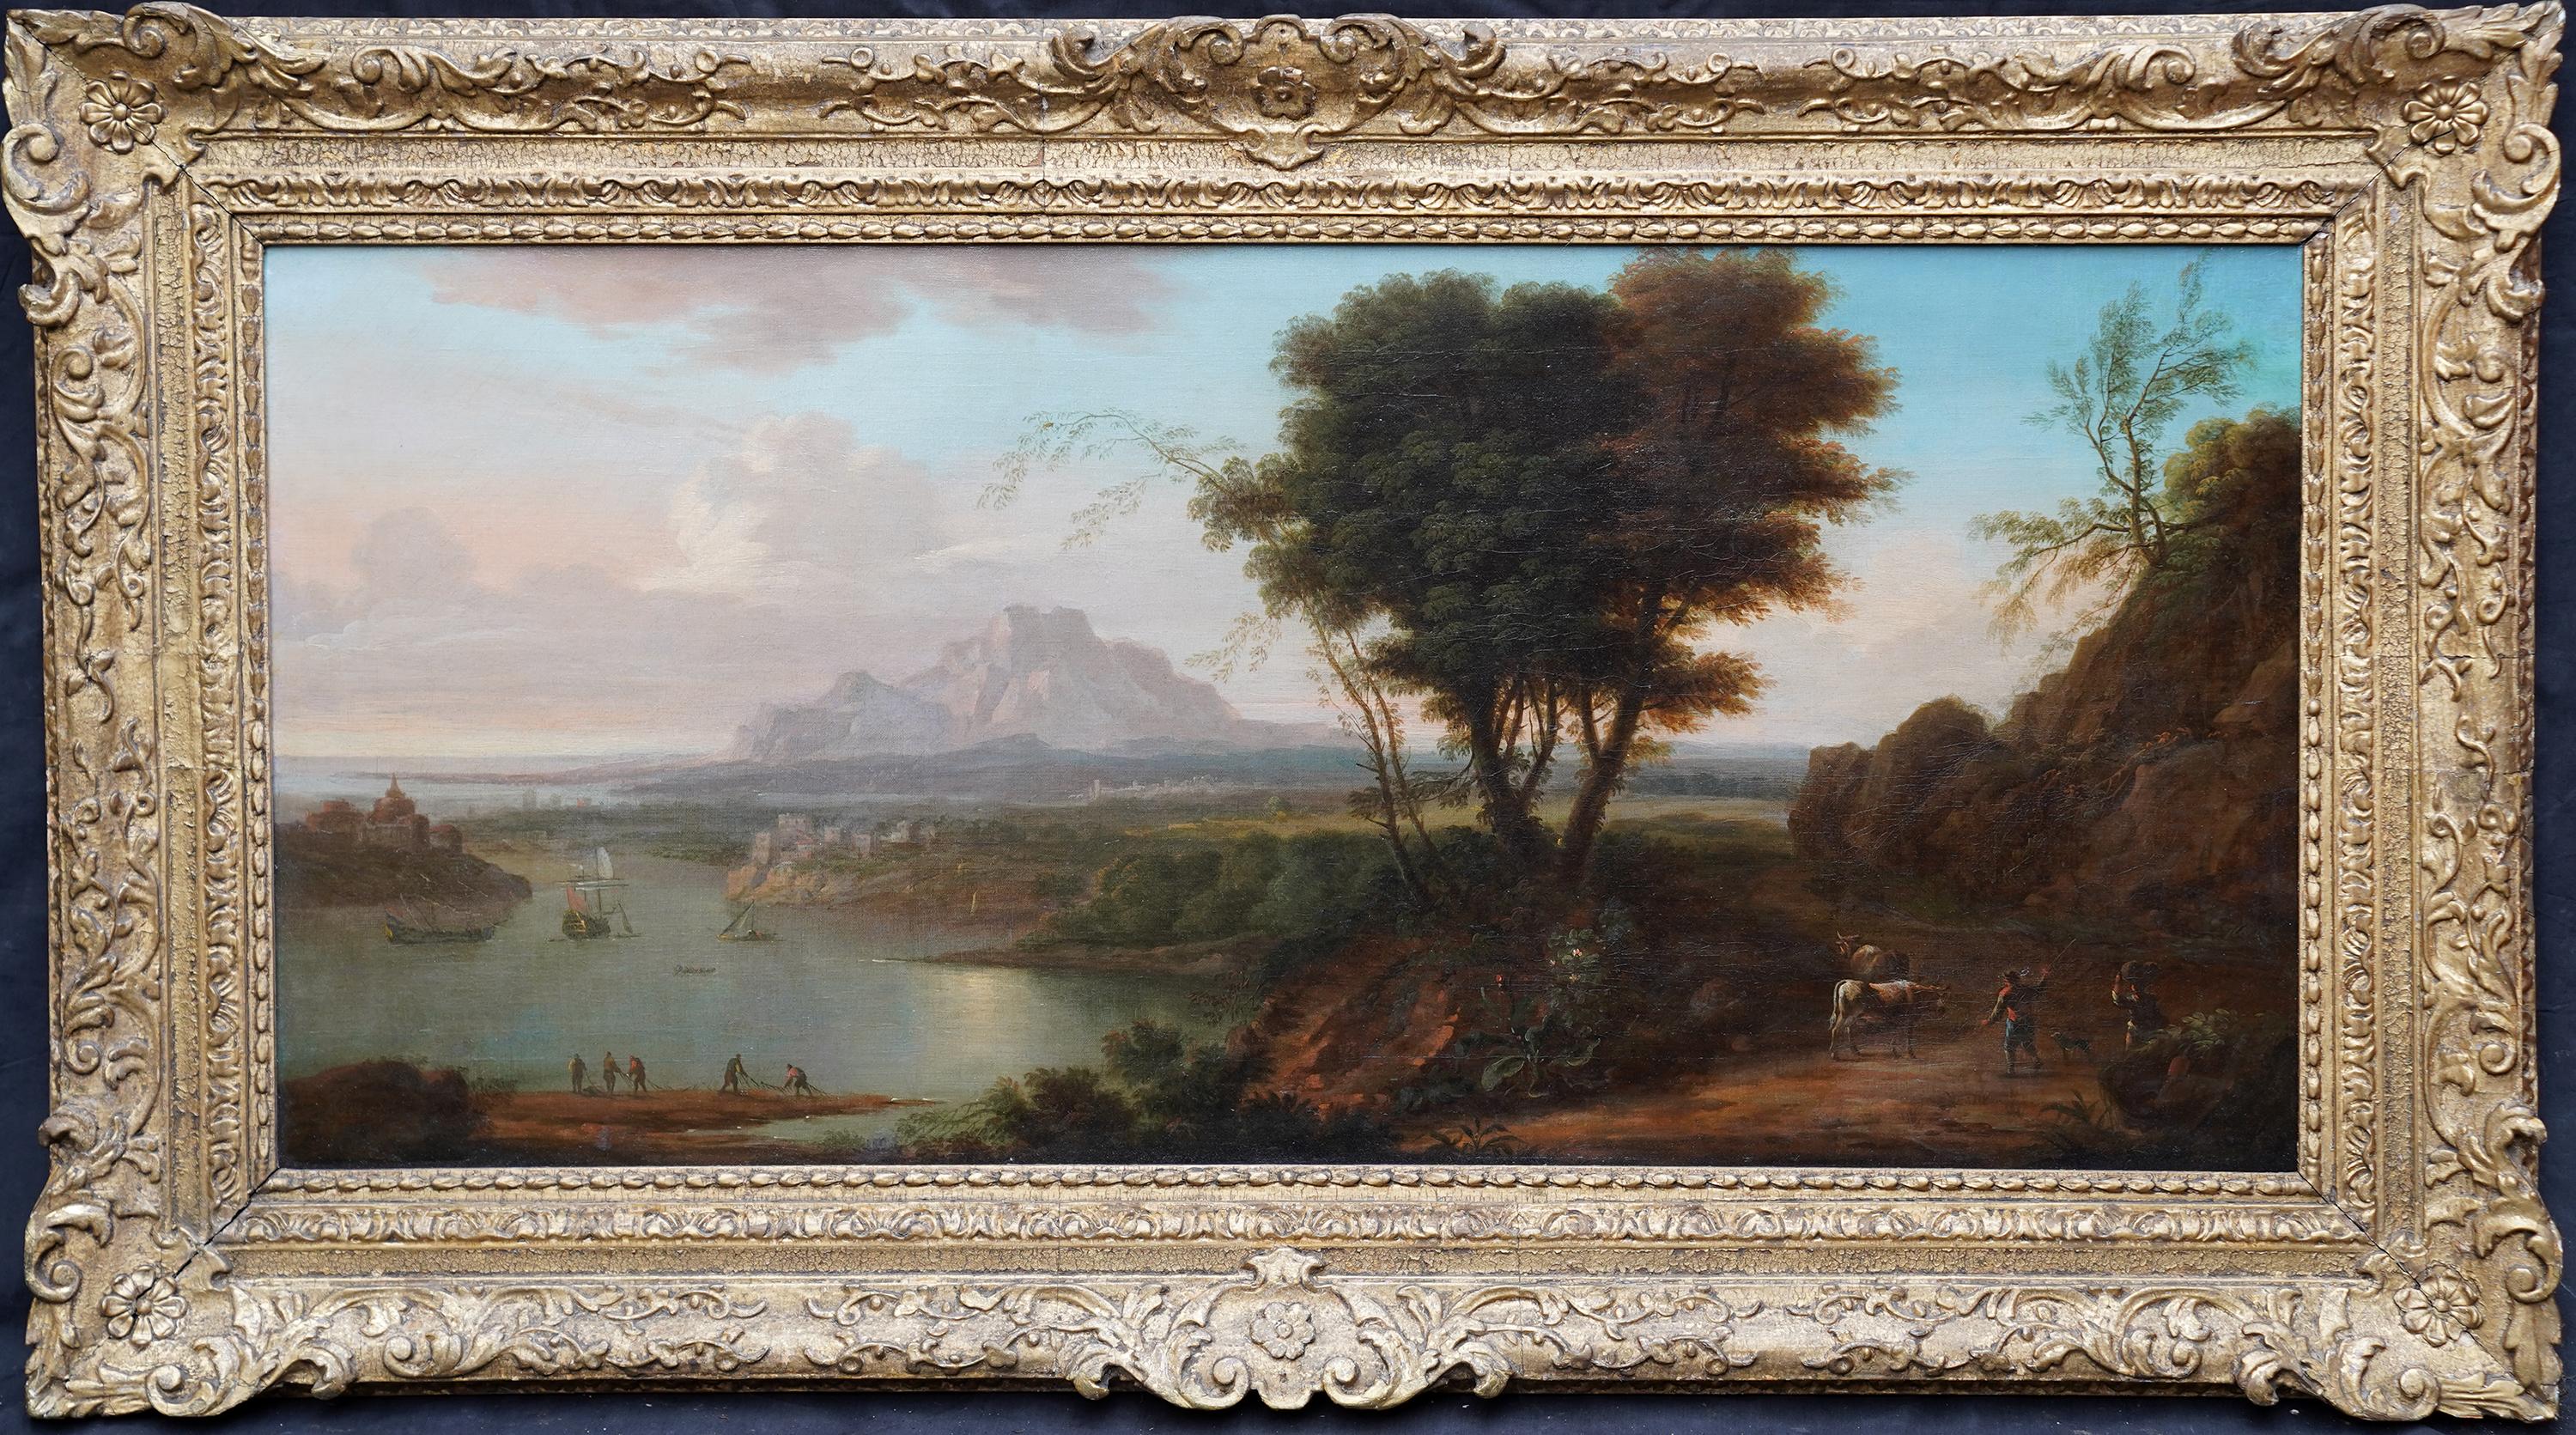 Landscape Painting Adriaen van Diest - Paysage italien - Peinture à l'huile Grand Tour d'un paysage de maître néerlandais 